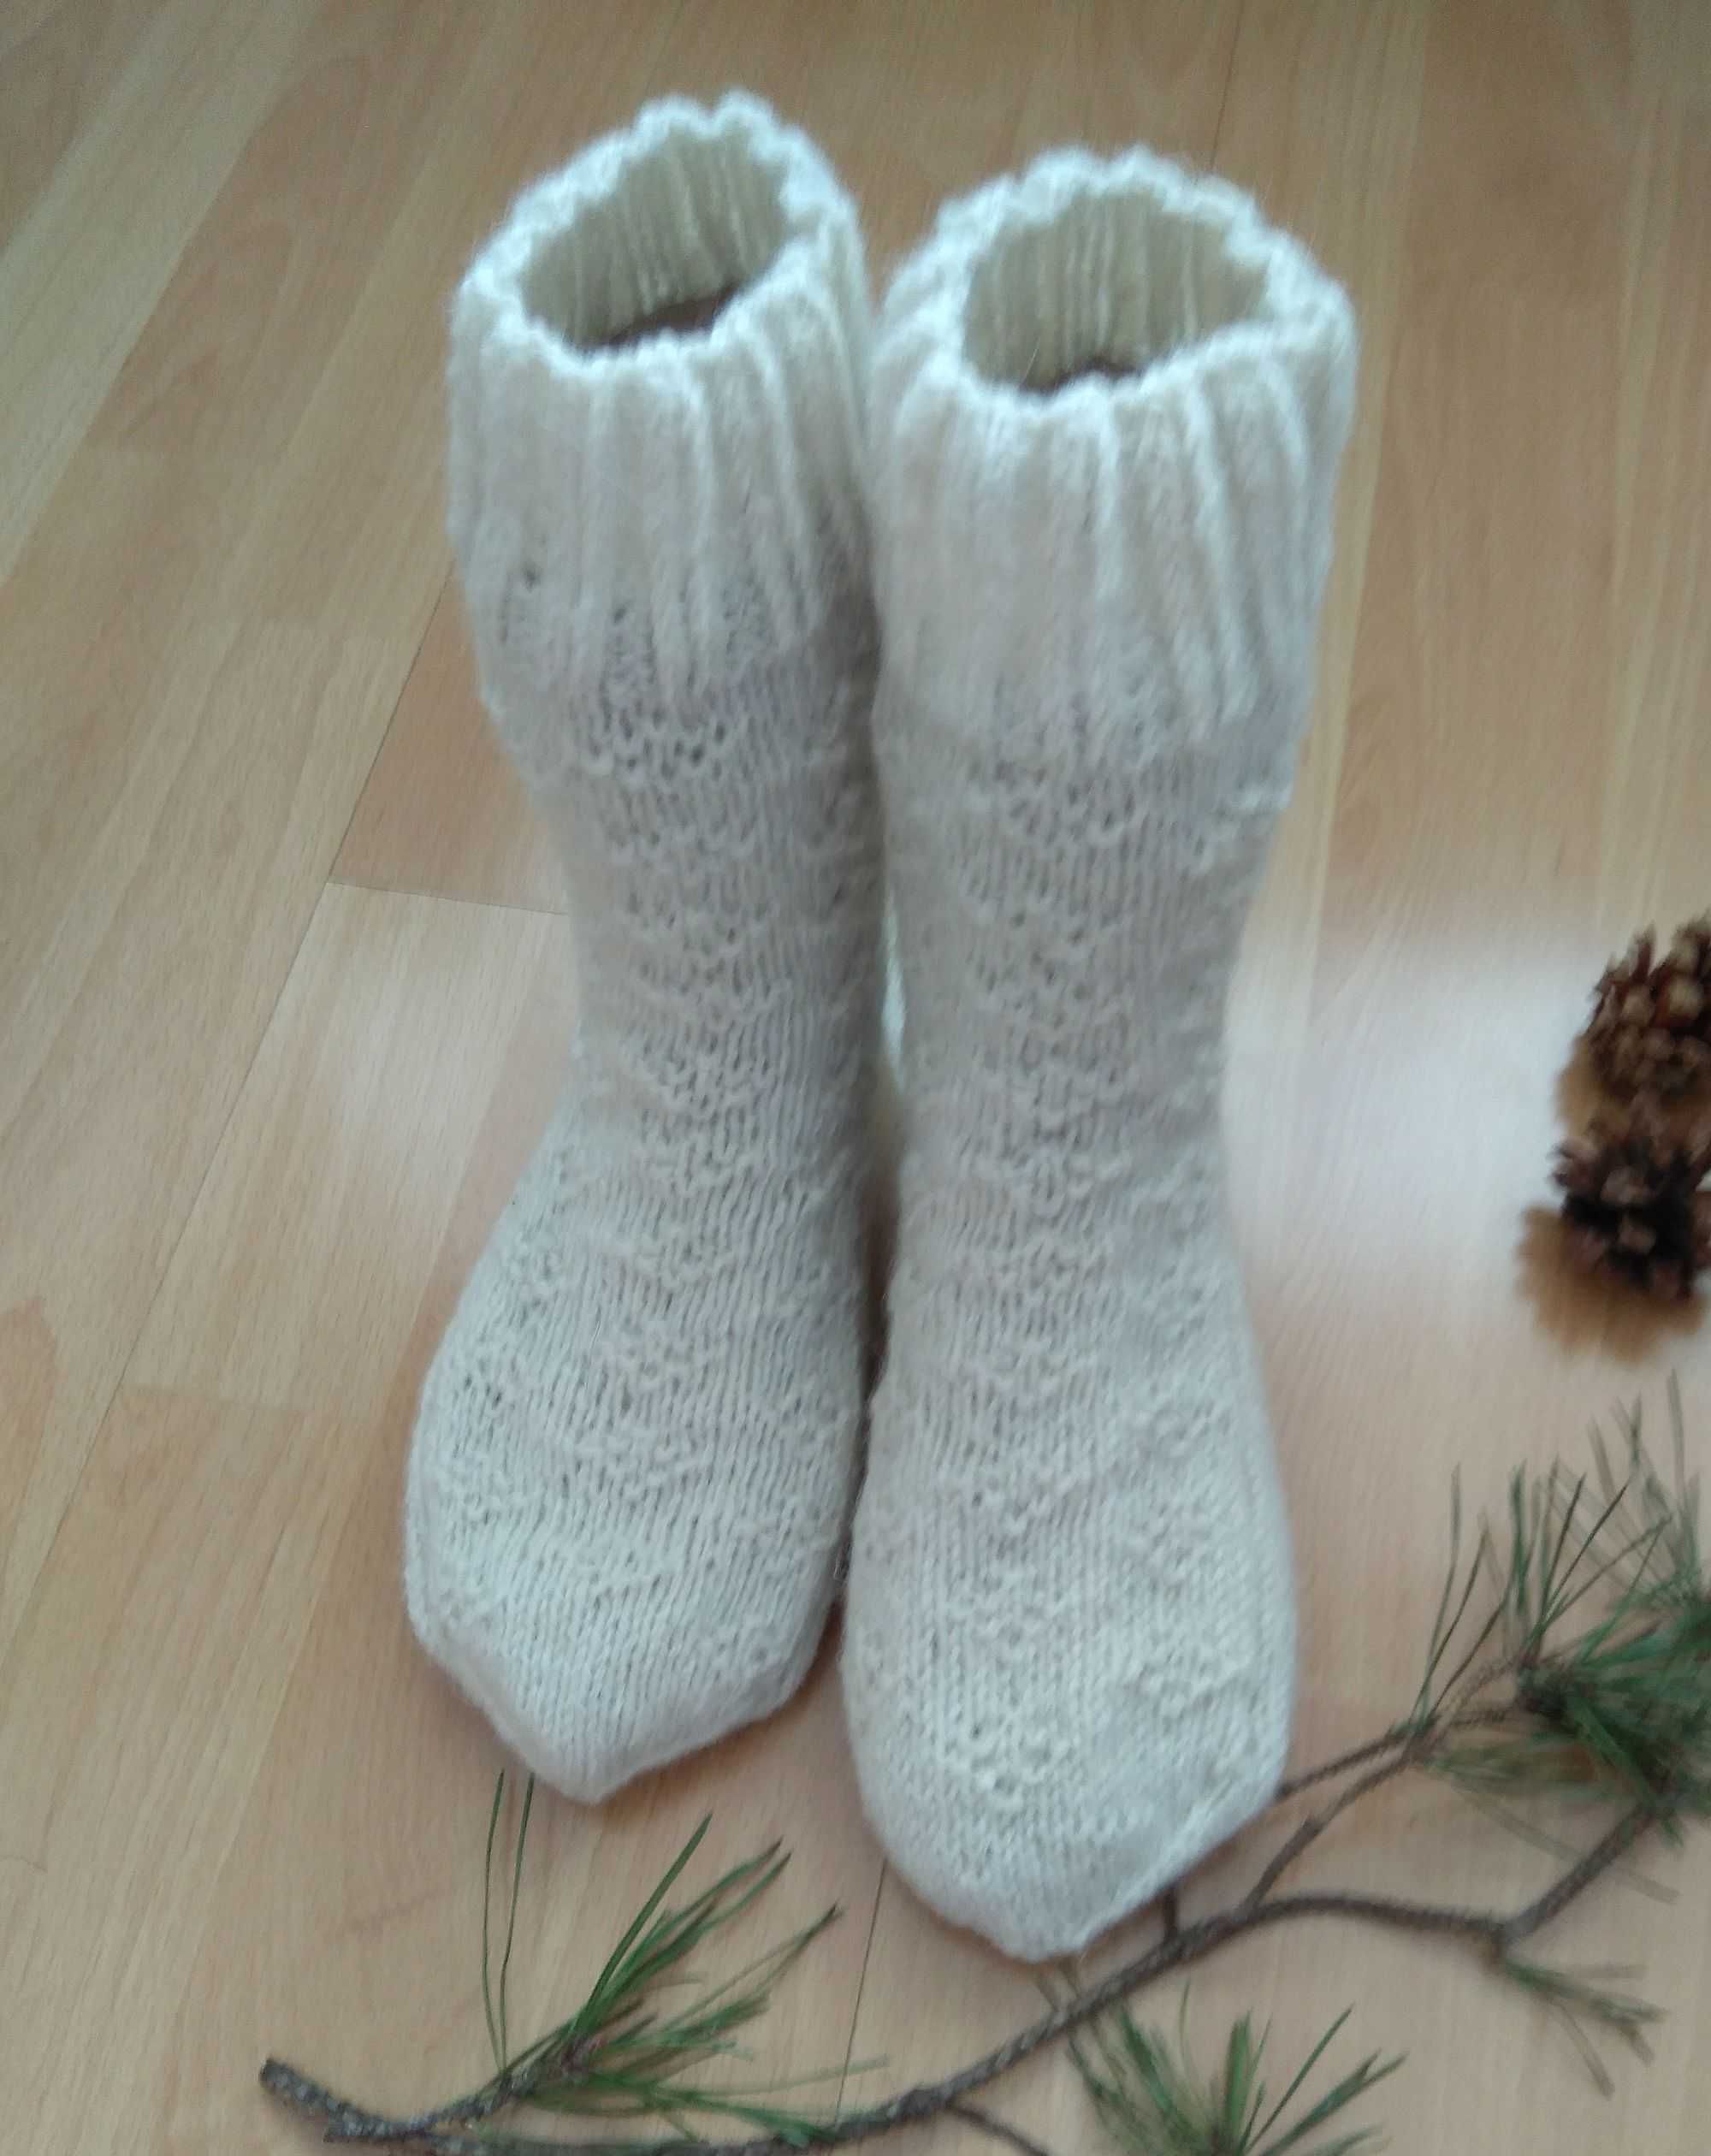 Шкарпетки із чистої вовни білої, 39-40 розмір